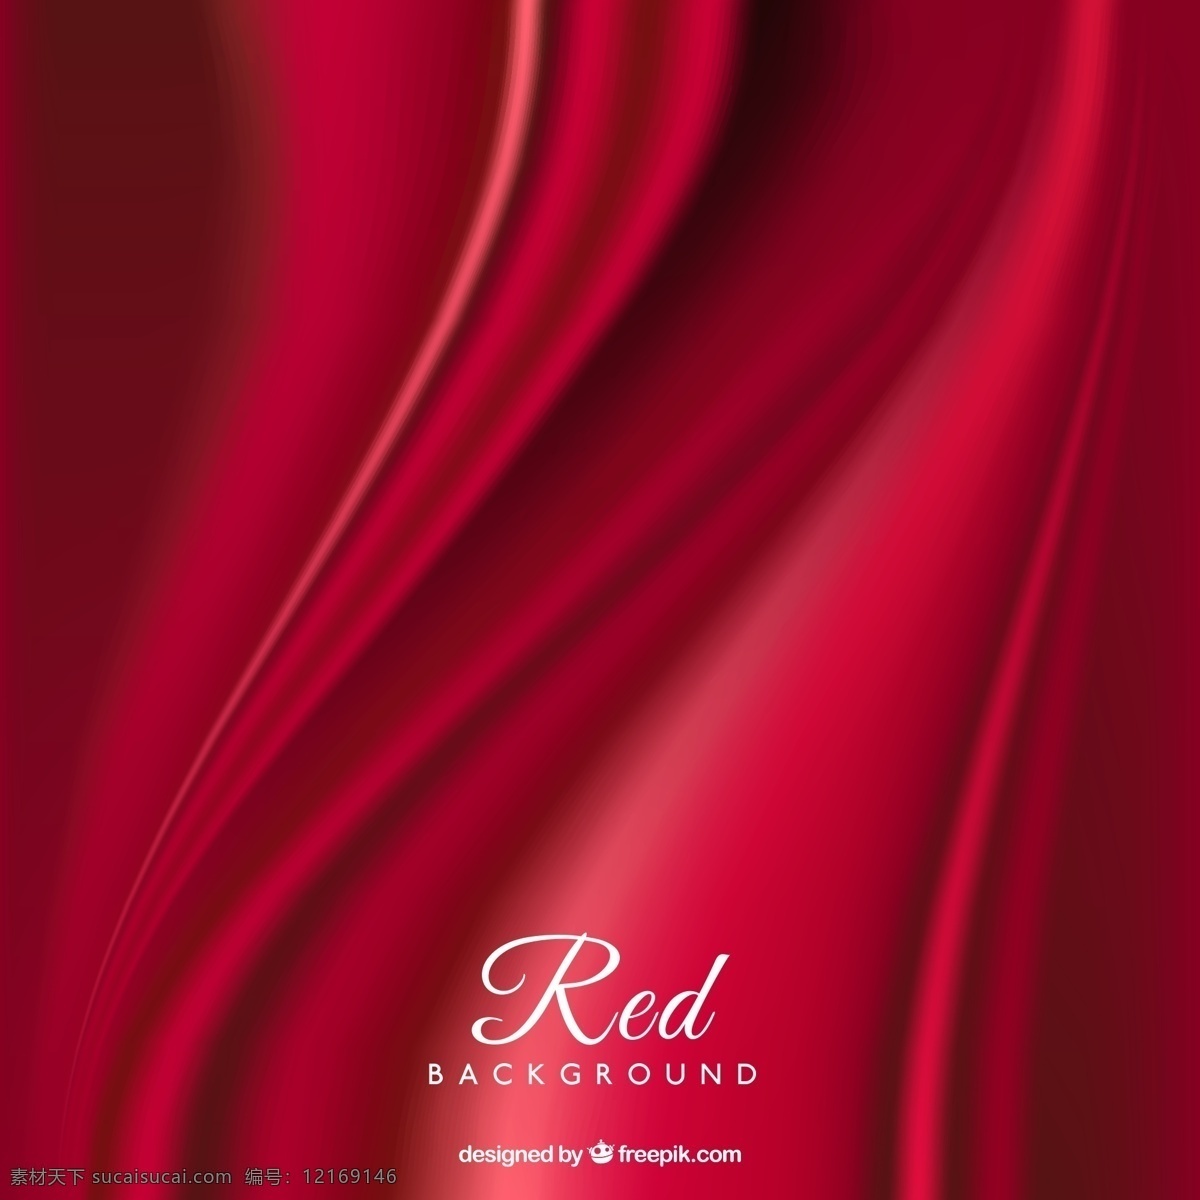 红色绸布背景 红色丝绸背景 红色布背景 红色绸布 背景 红色背景 绸布